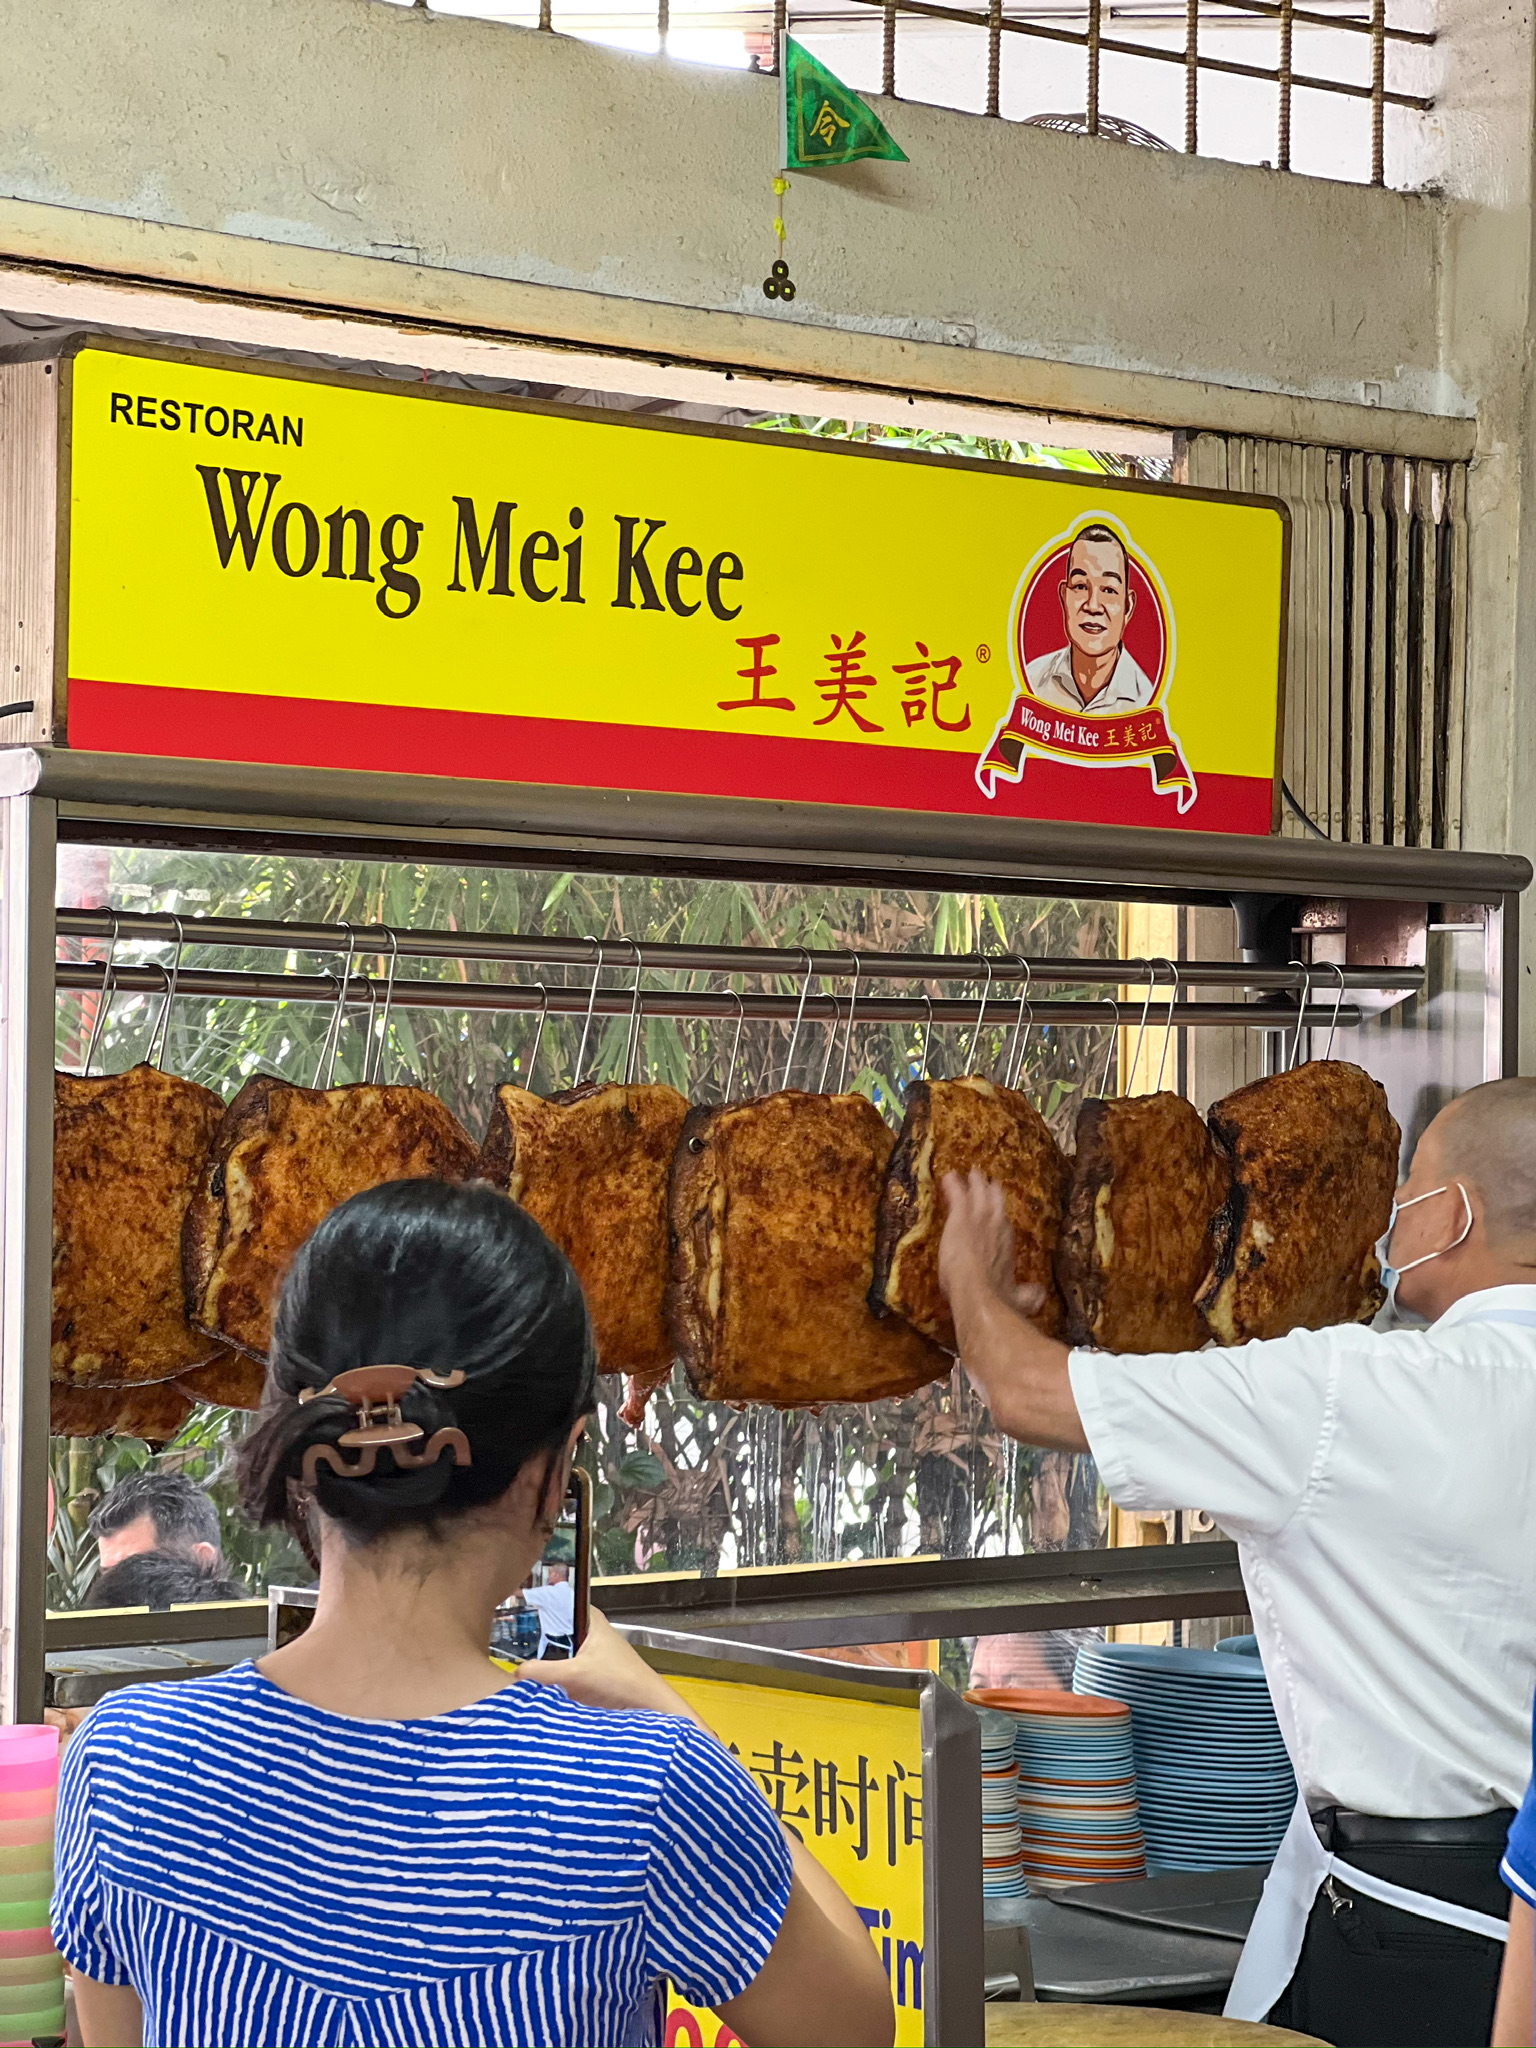 Restoran Wong Mei Kee